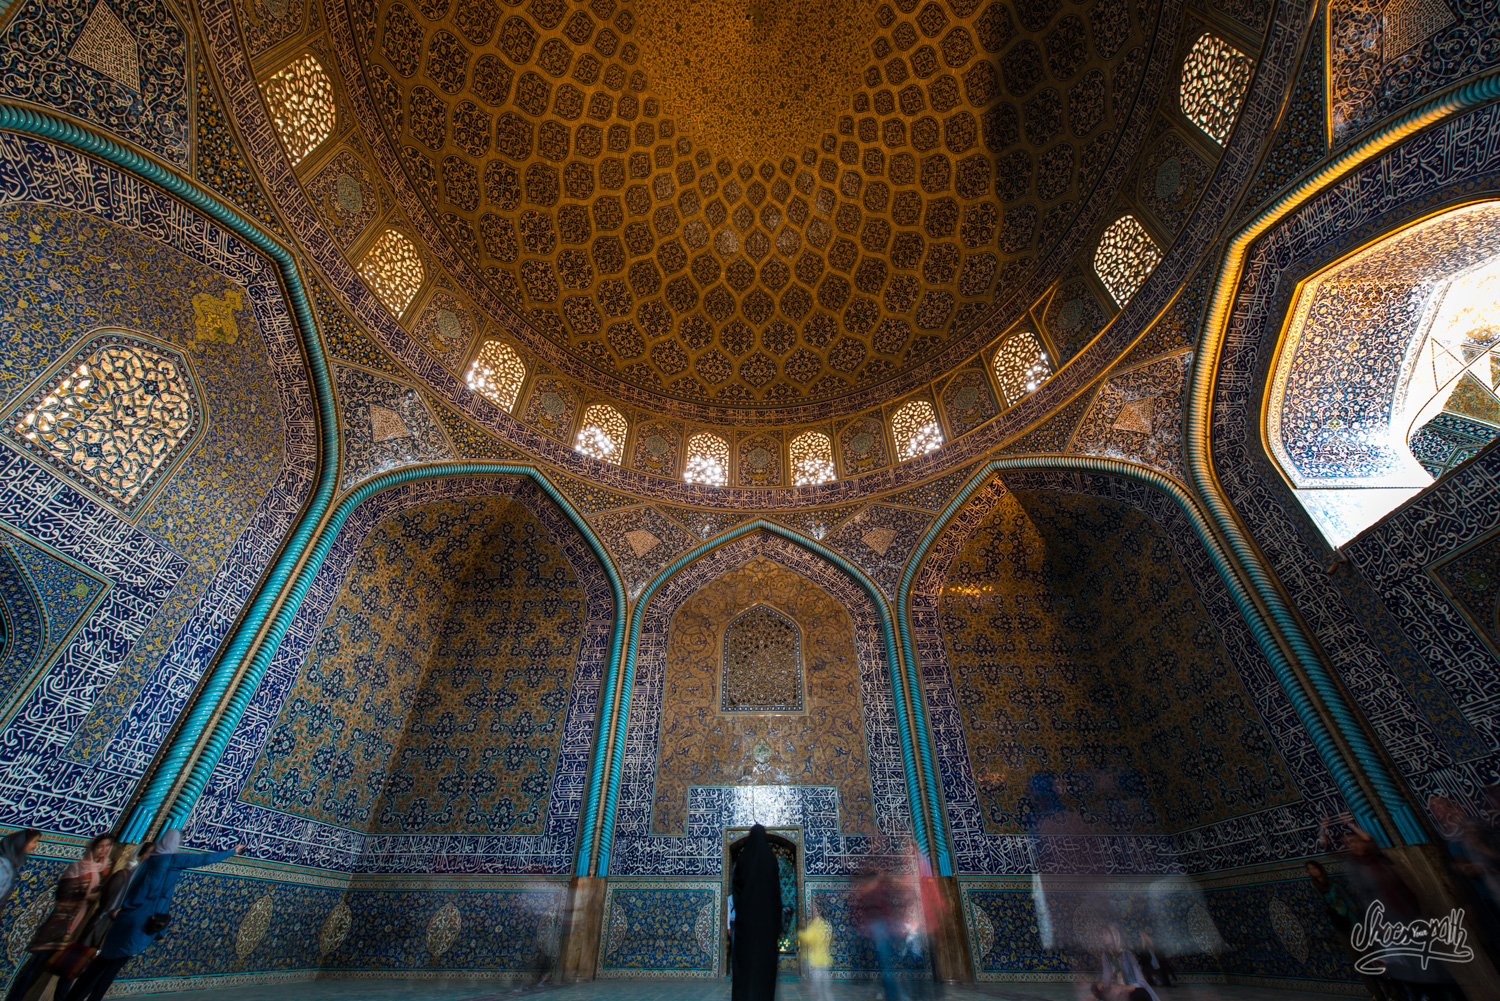 Sheikh lotfallah's wonderful mosaics